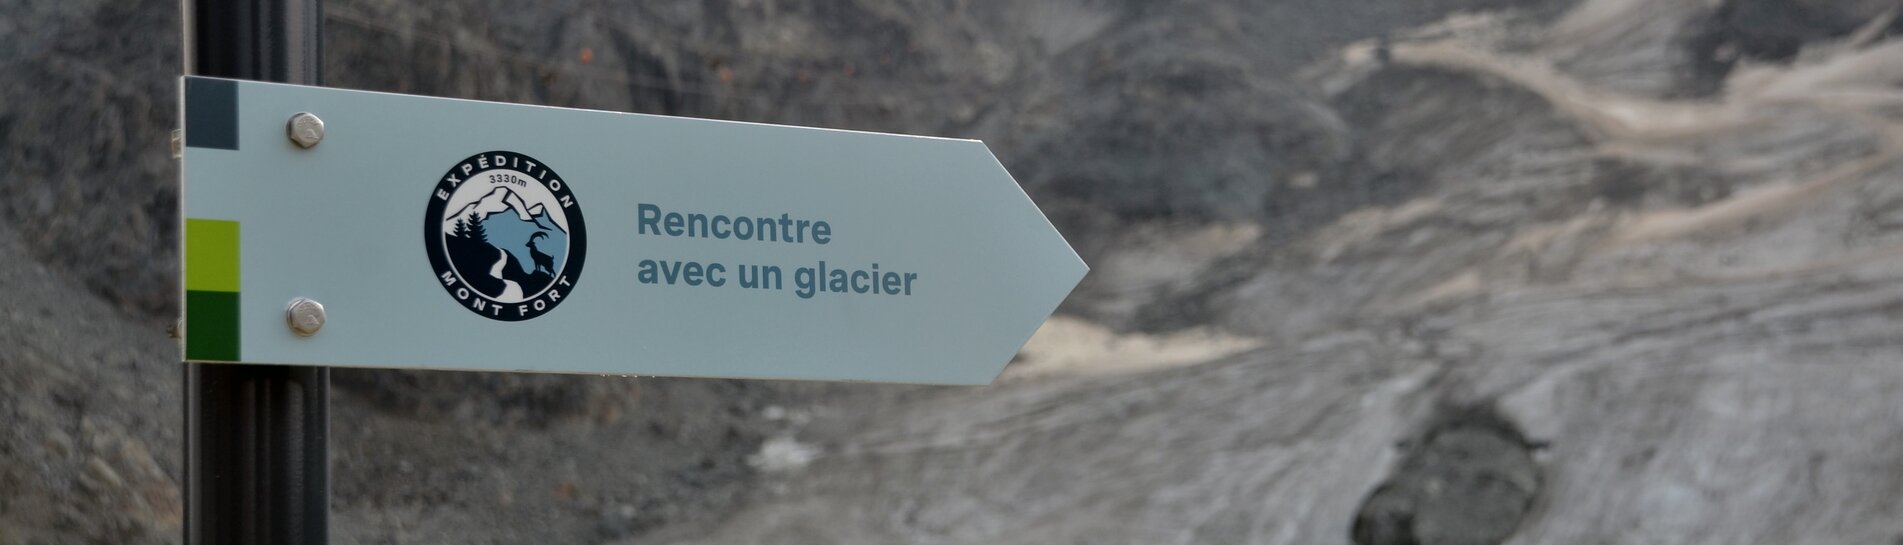 Sentier pédagogique "Rencontre avec un glacier" | © Bureau Relief | S. Martin